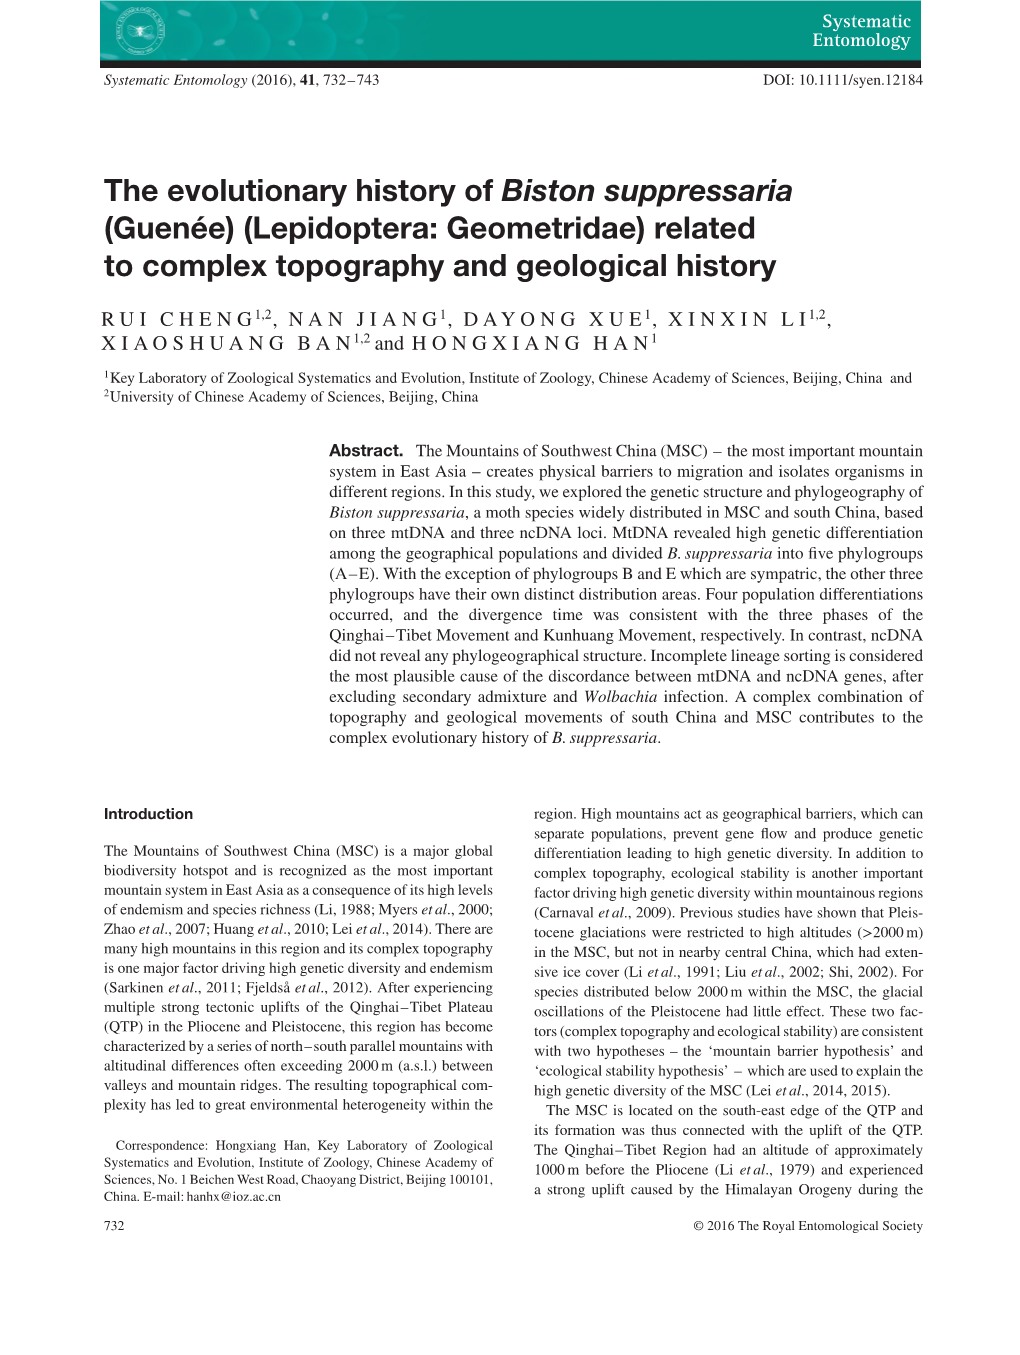 The Evolutionary History of Biston Suppressaria (Guenã©E